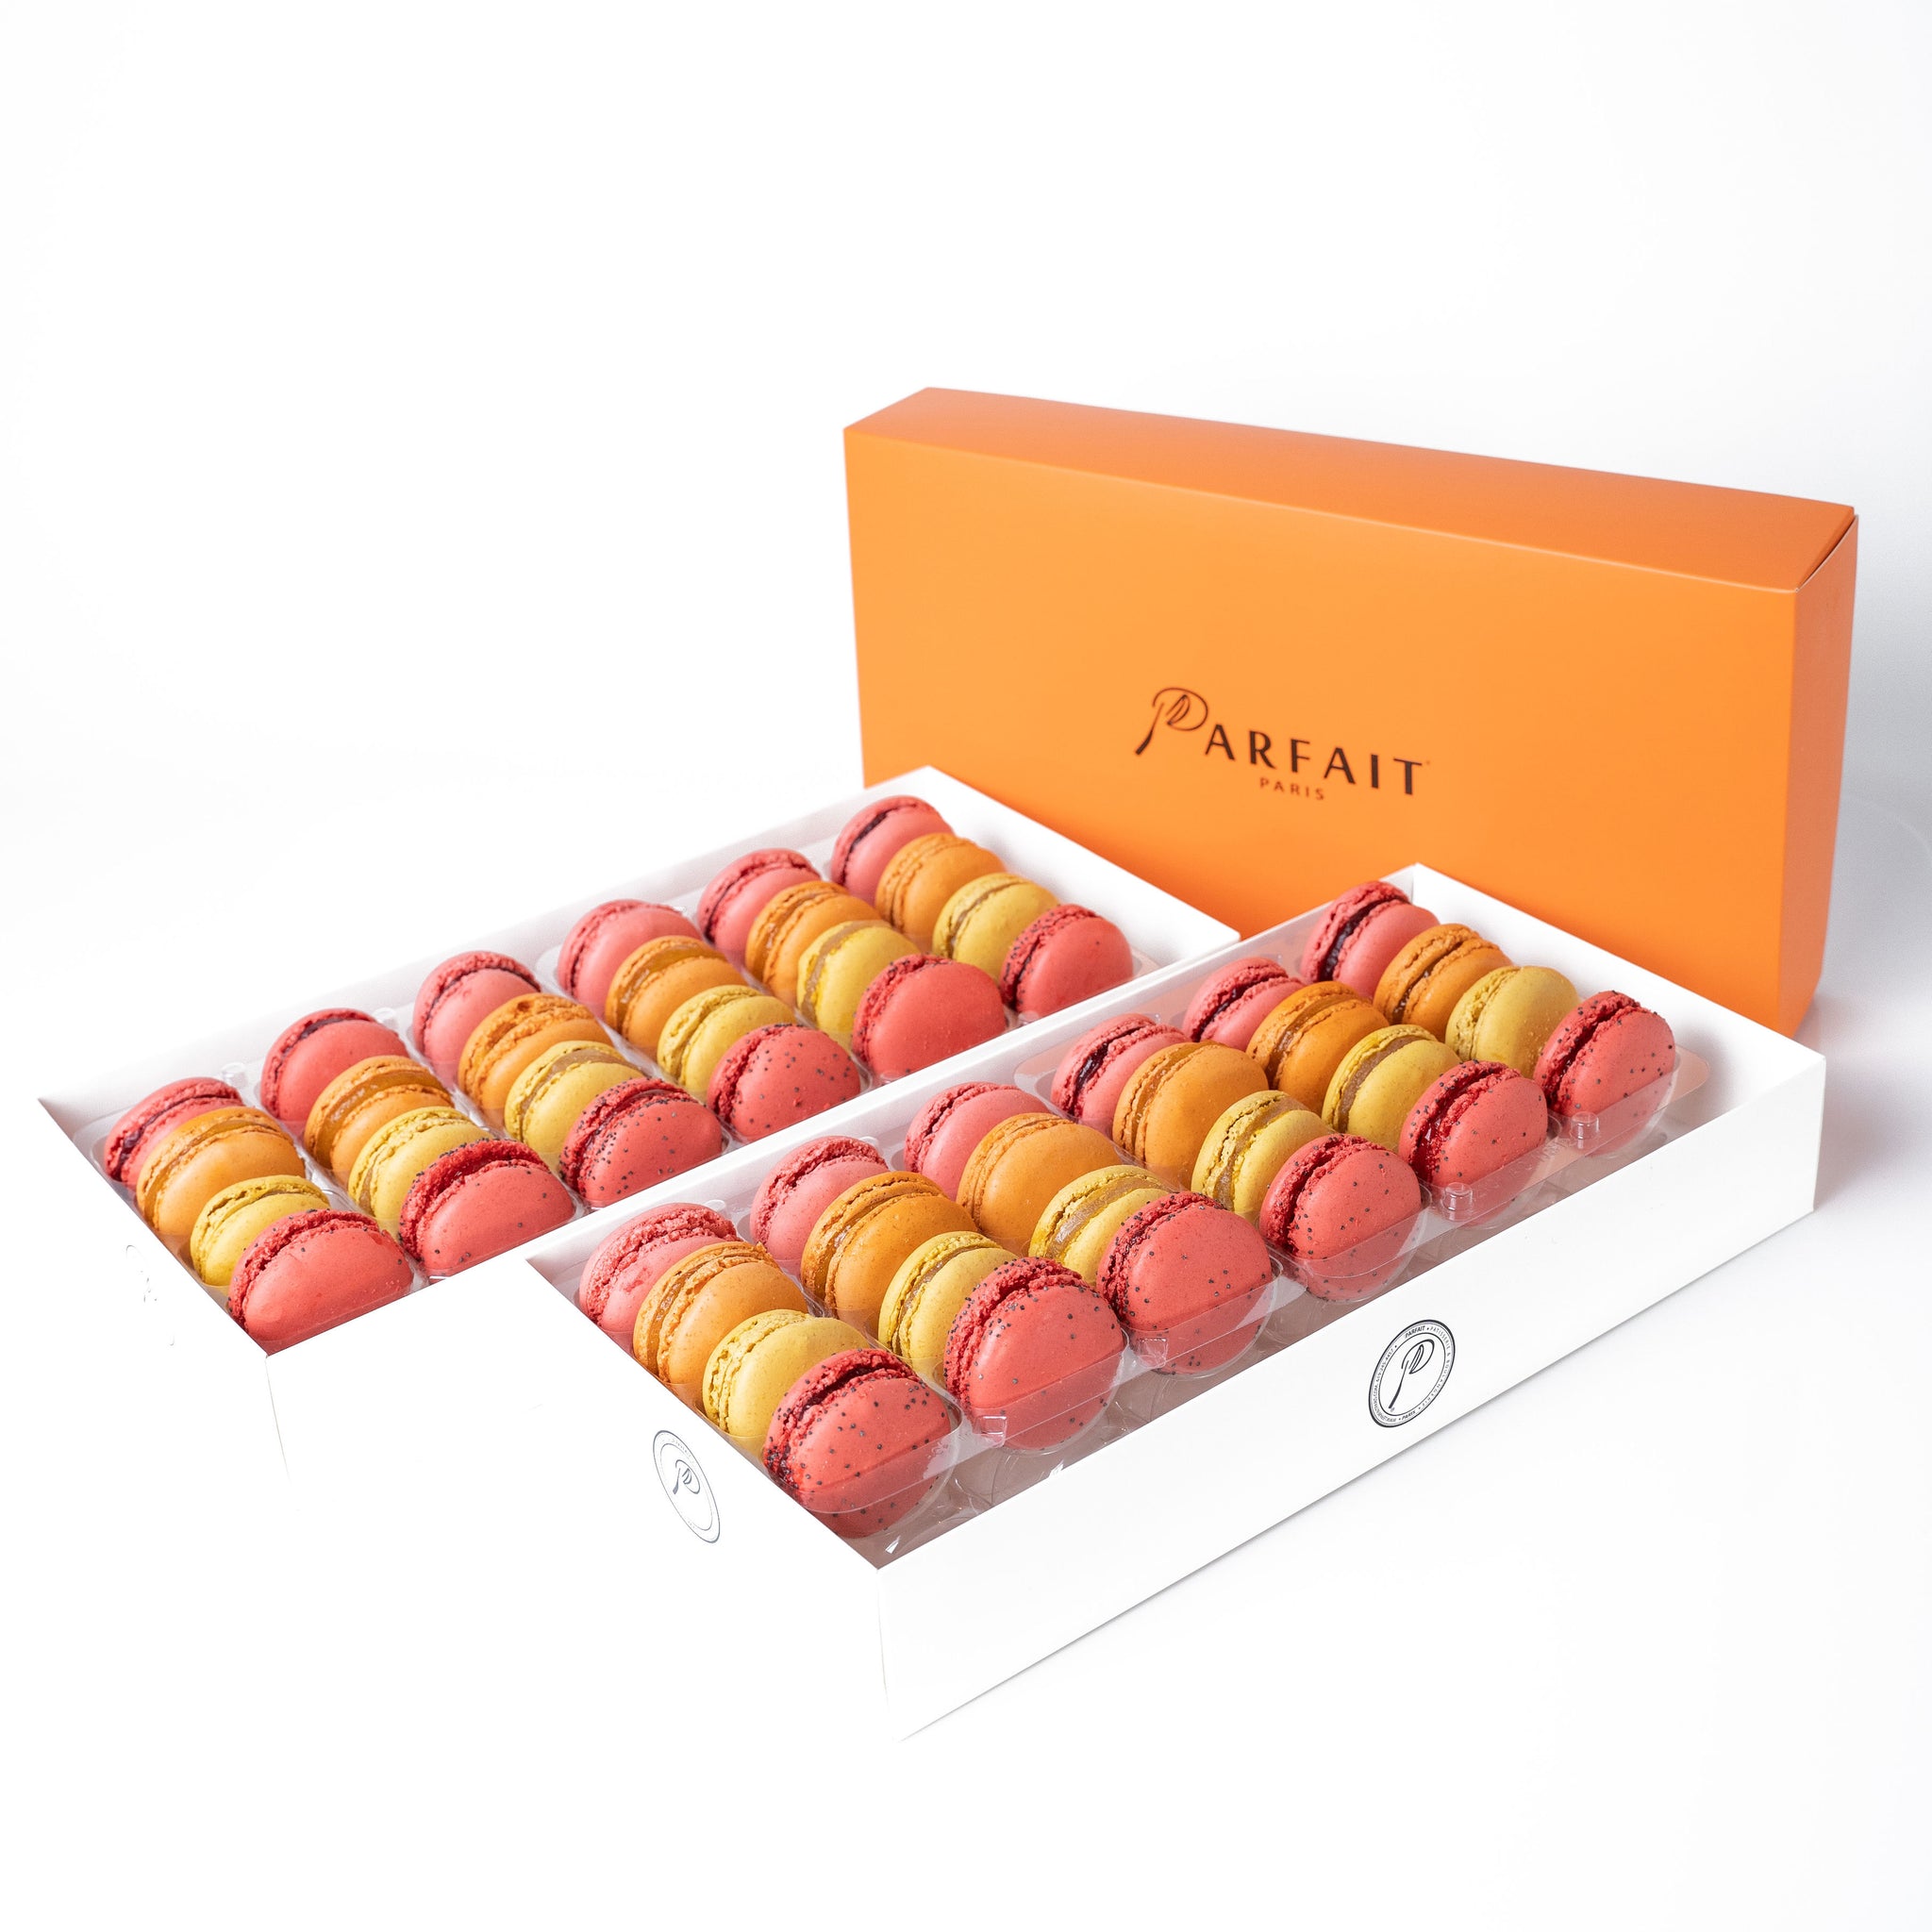 Parfait Paris Macaron Fruit Pack